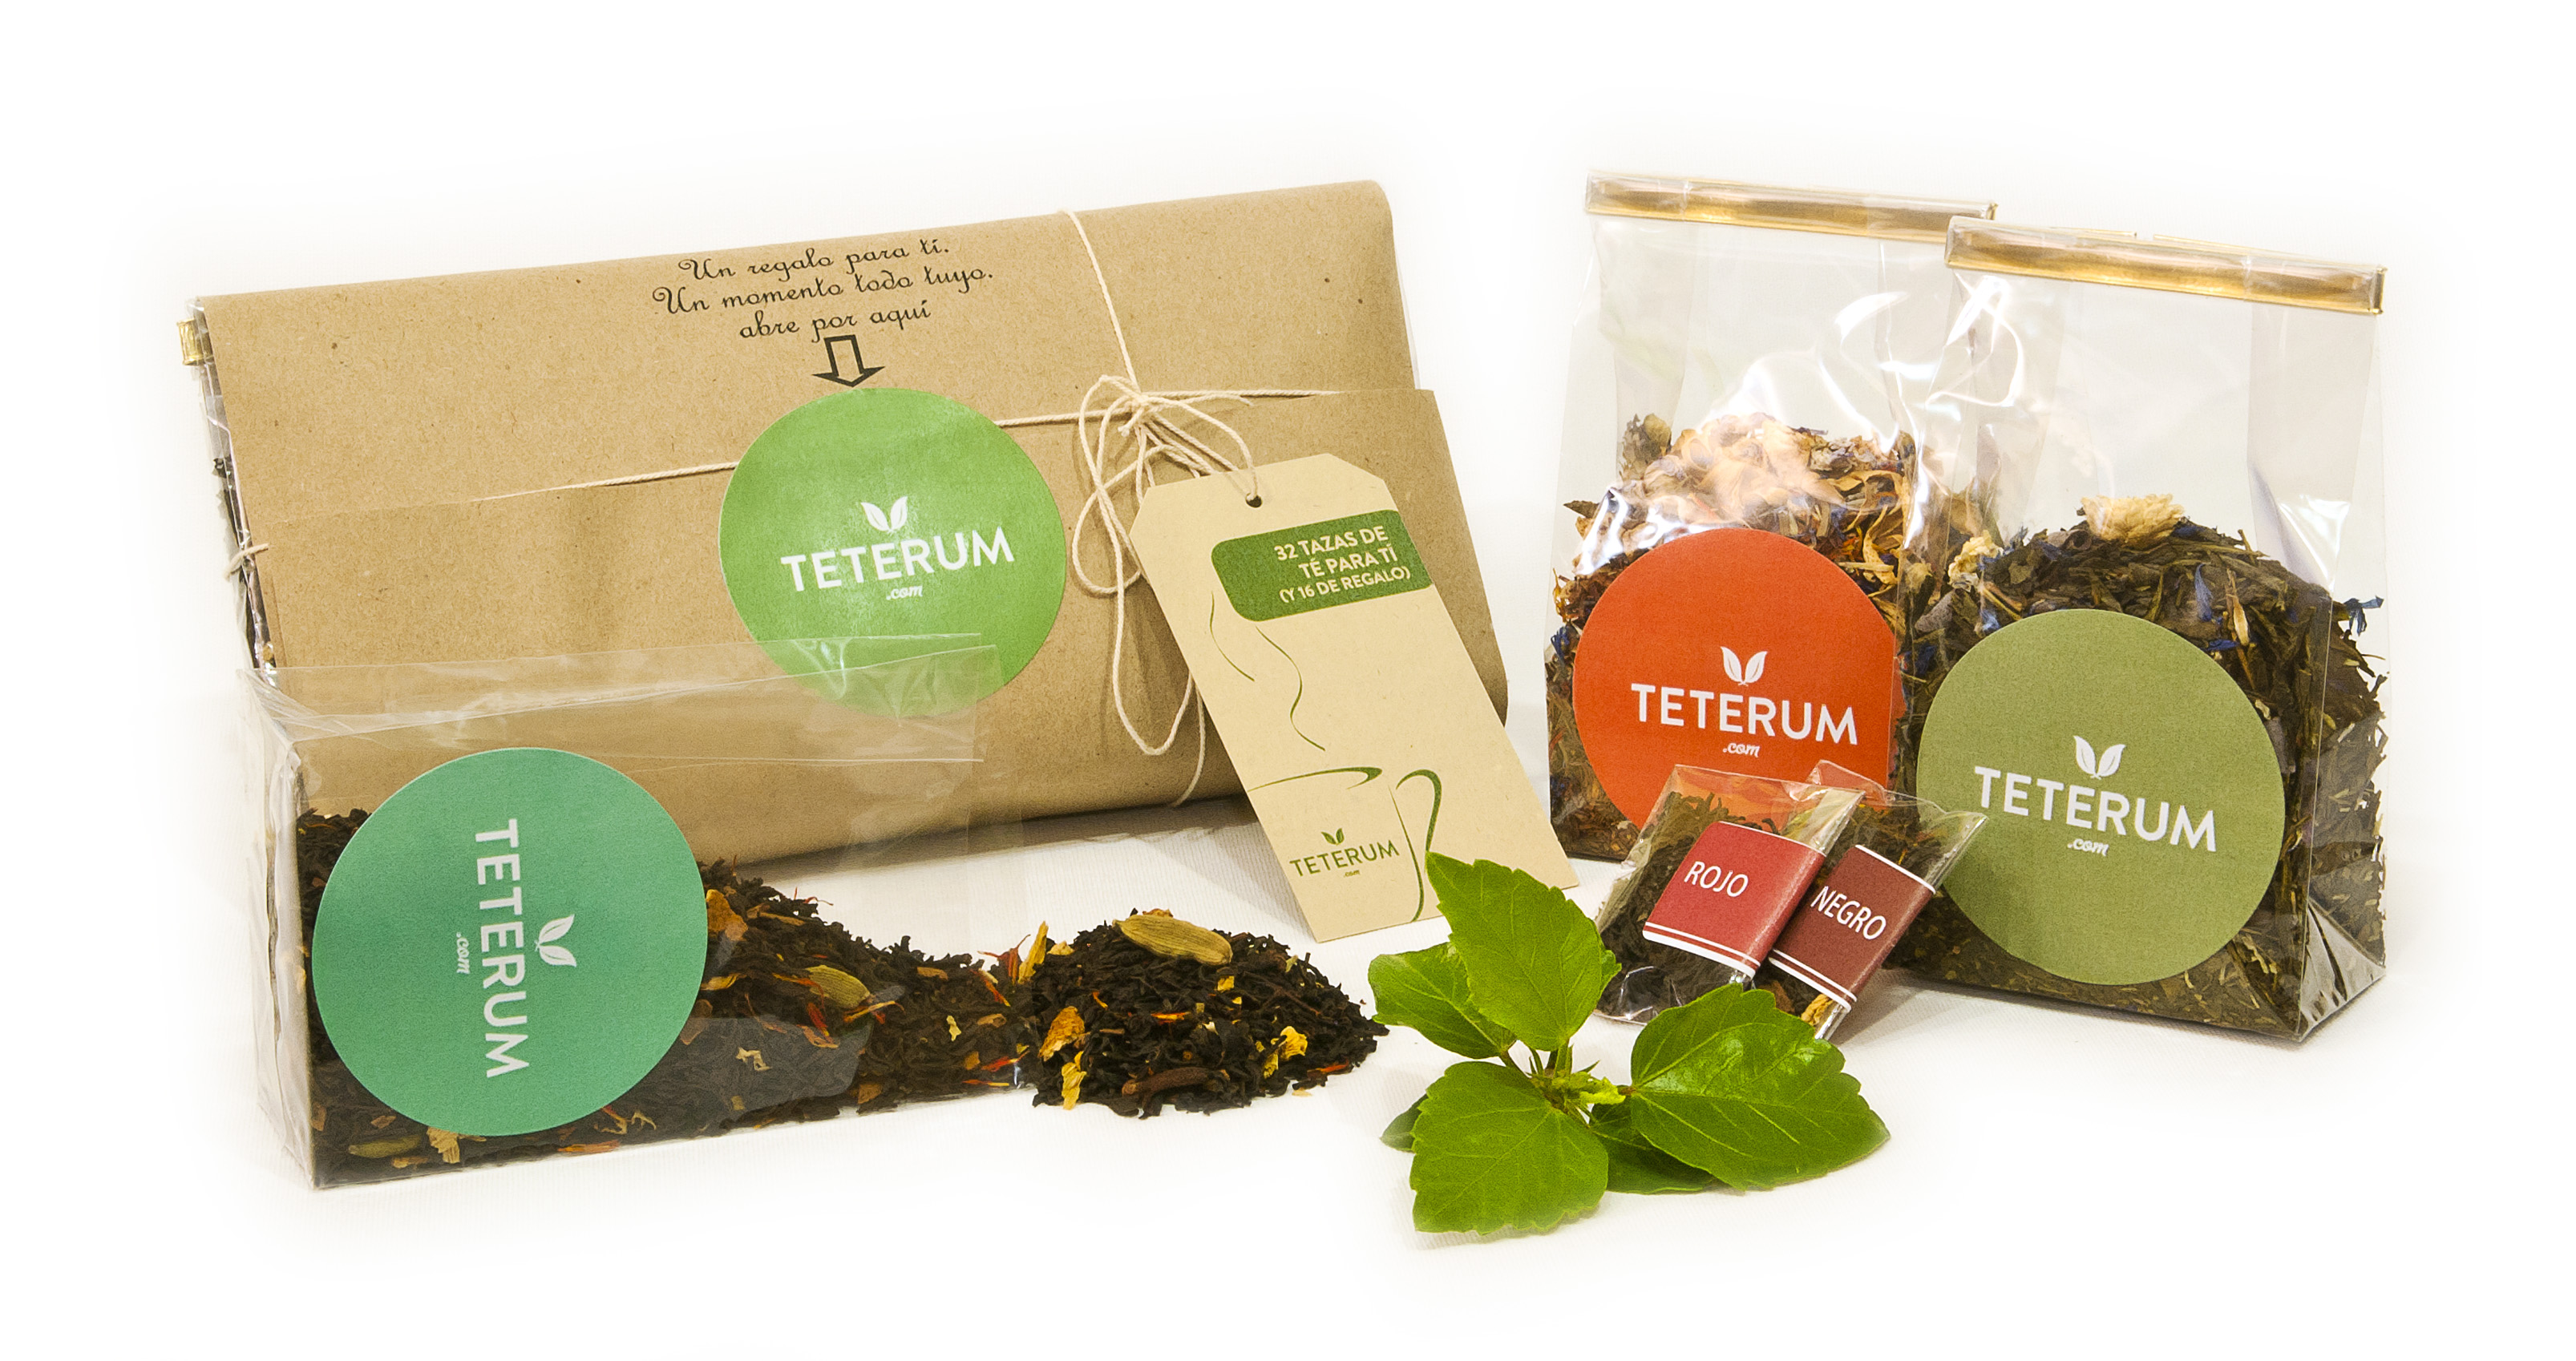 teterum.com ofrece la posibilidad de crear un té personalizado